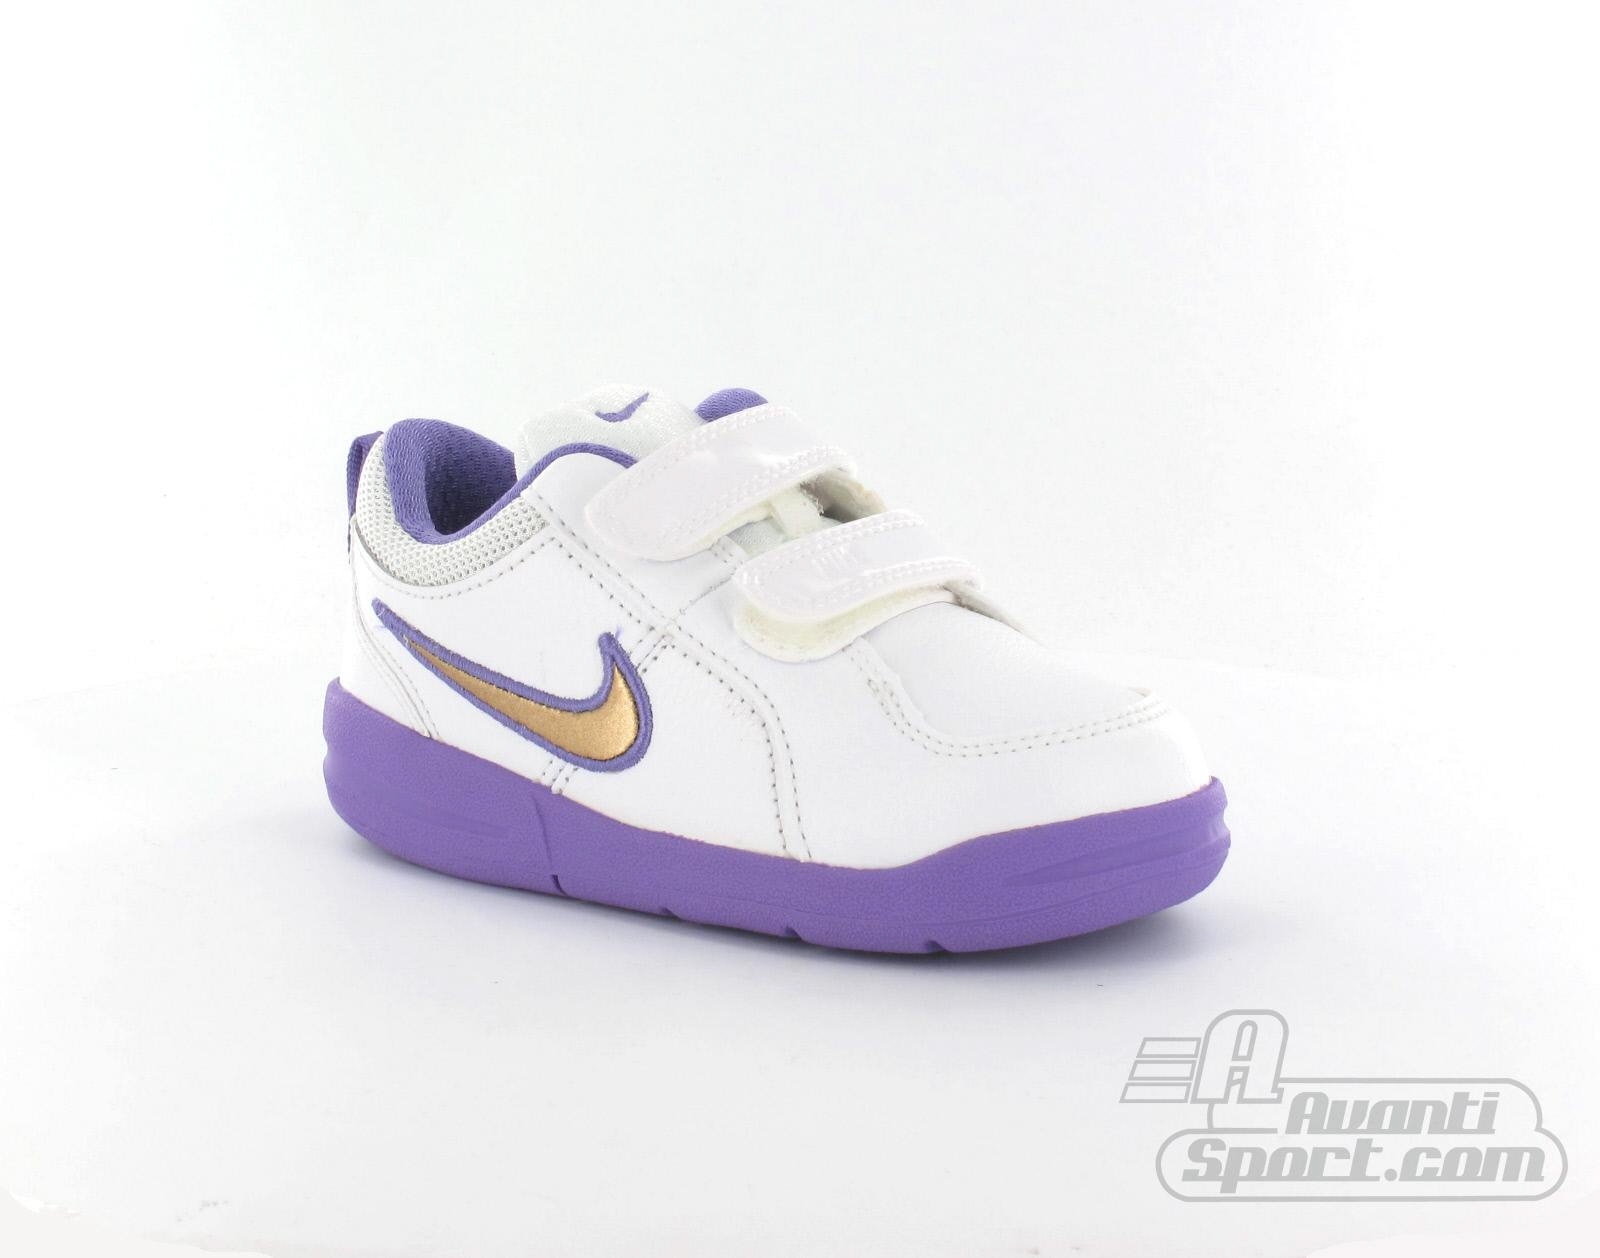 Avantisport - Nike - Pico 4 (Tdv) - Nike Kinderschoenen